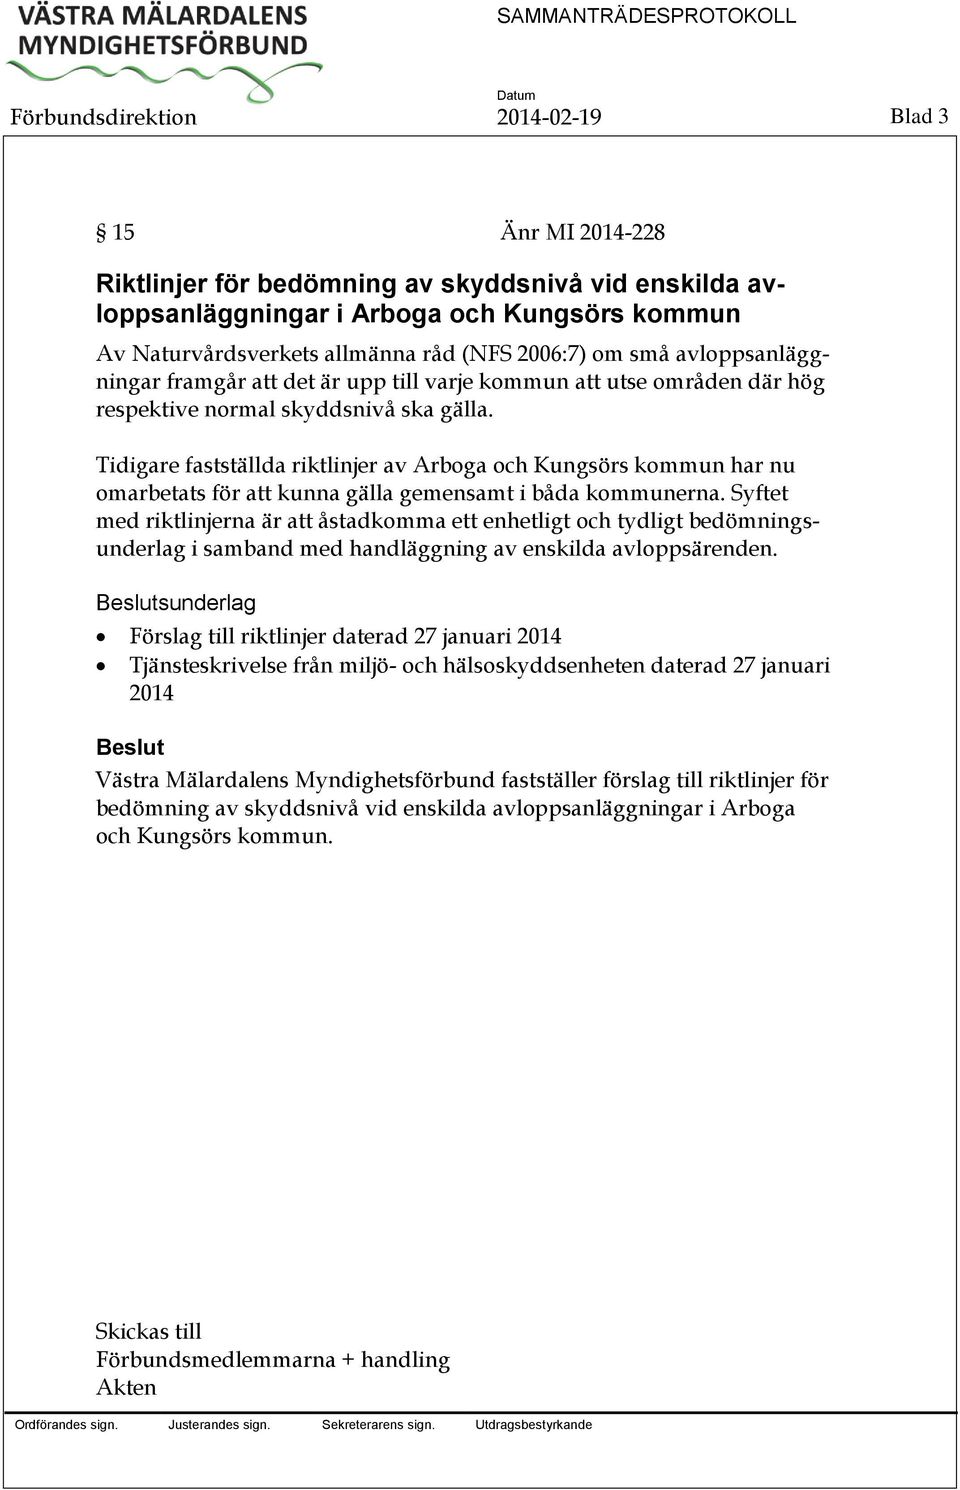 Tidigare fastställda riktlinjer av Arboga och Kungsörs kommun har nu omarbetats för att kunna gälla gemensamt i båda kommunerna.